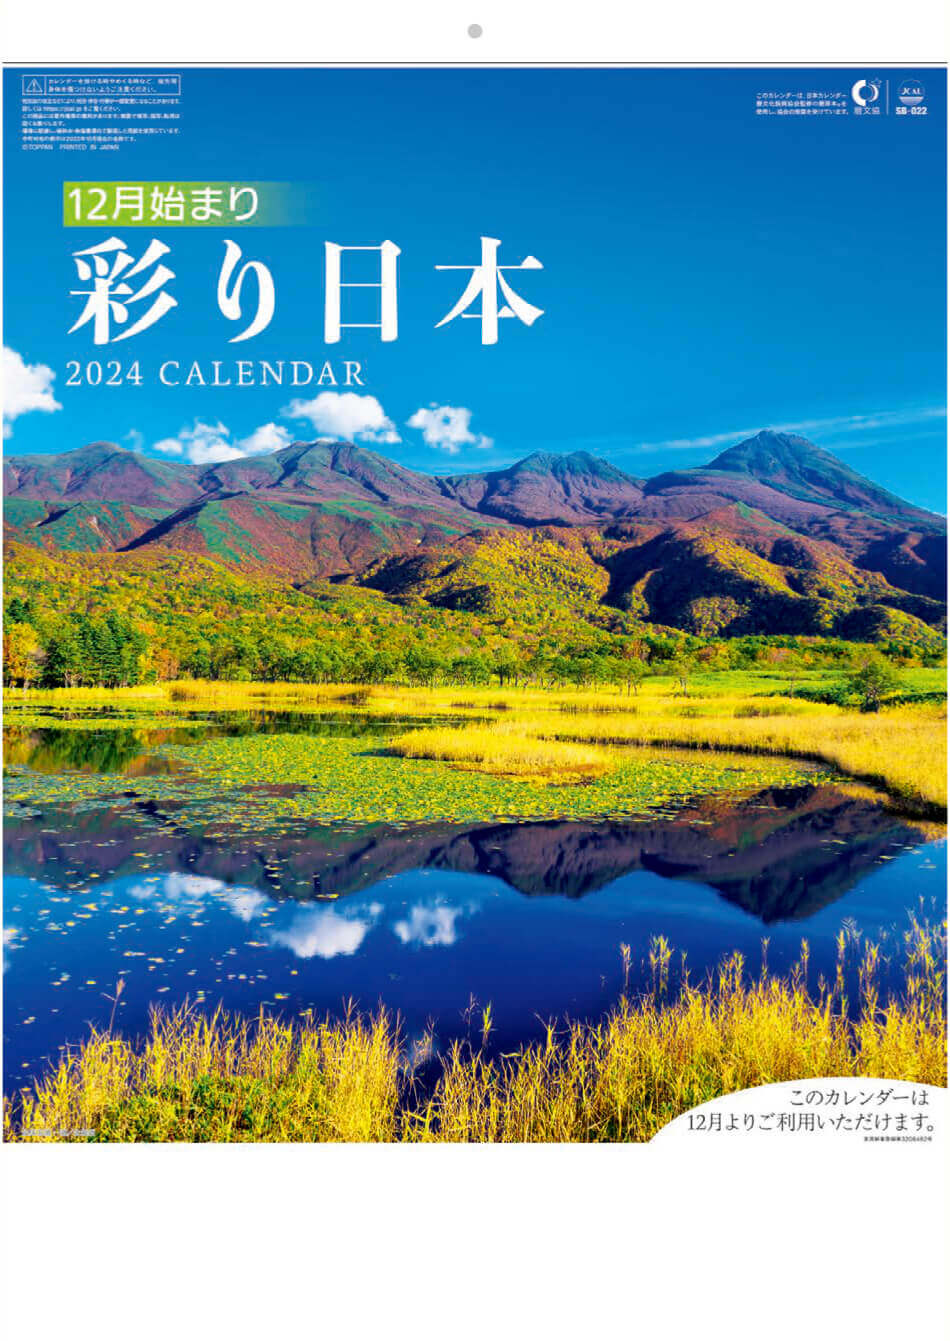 表紙 彩り日本(12月はじまり) 2024年カレンダーの画像